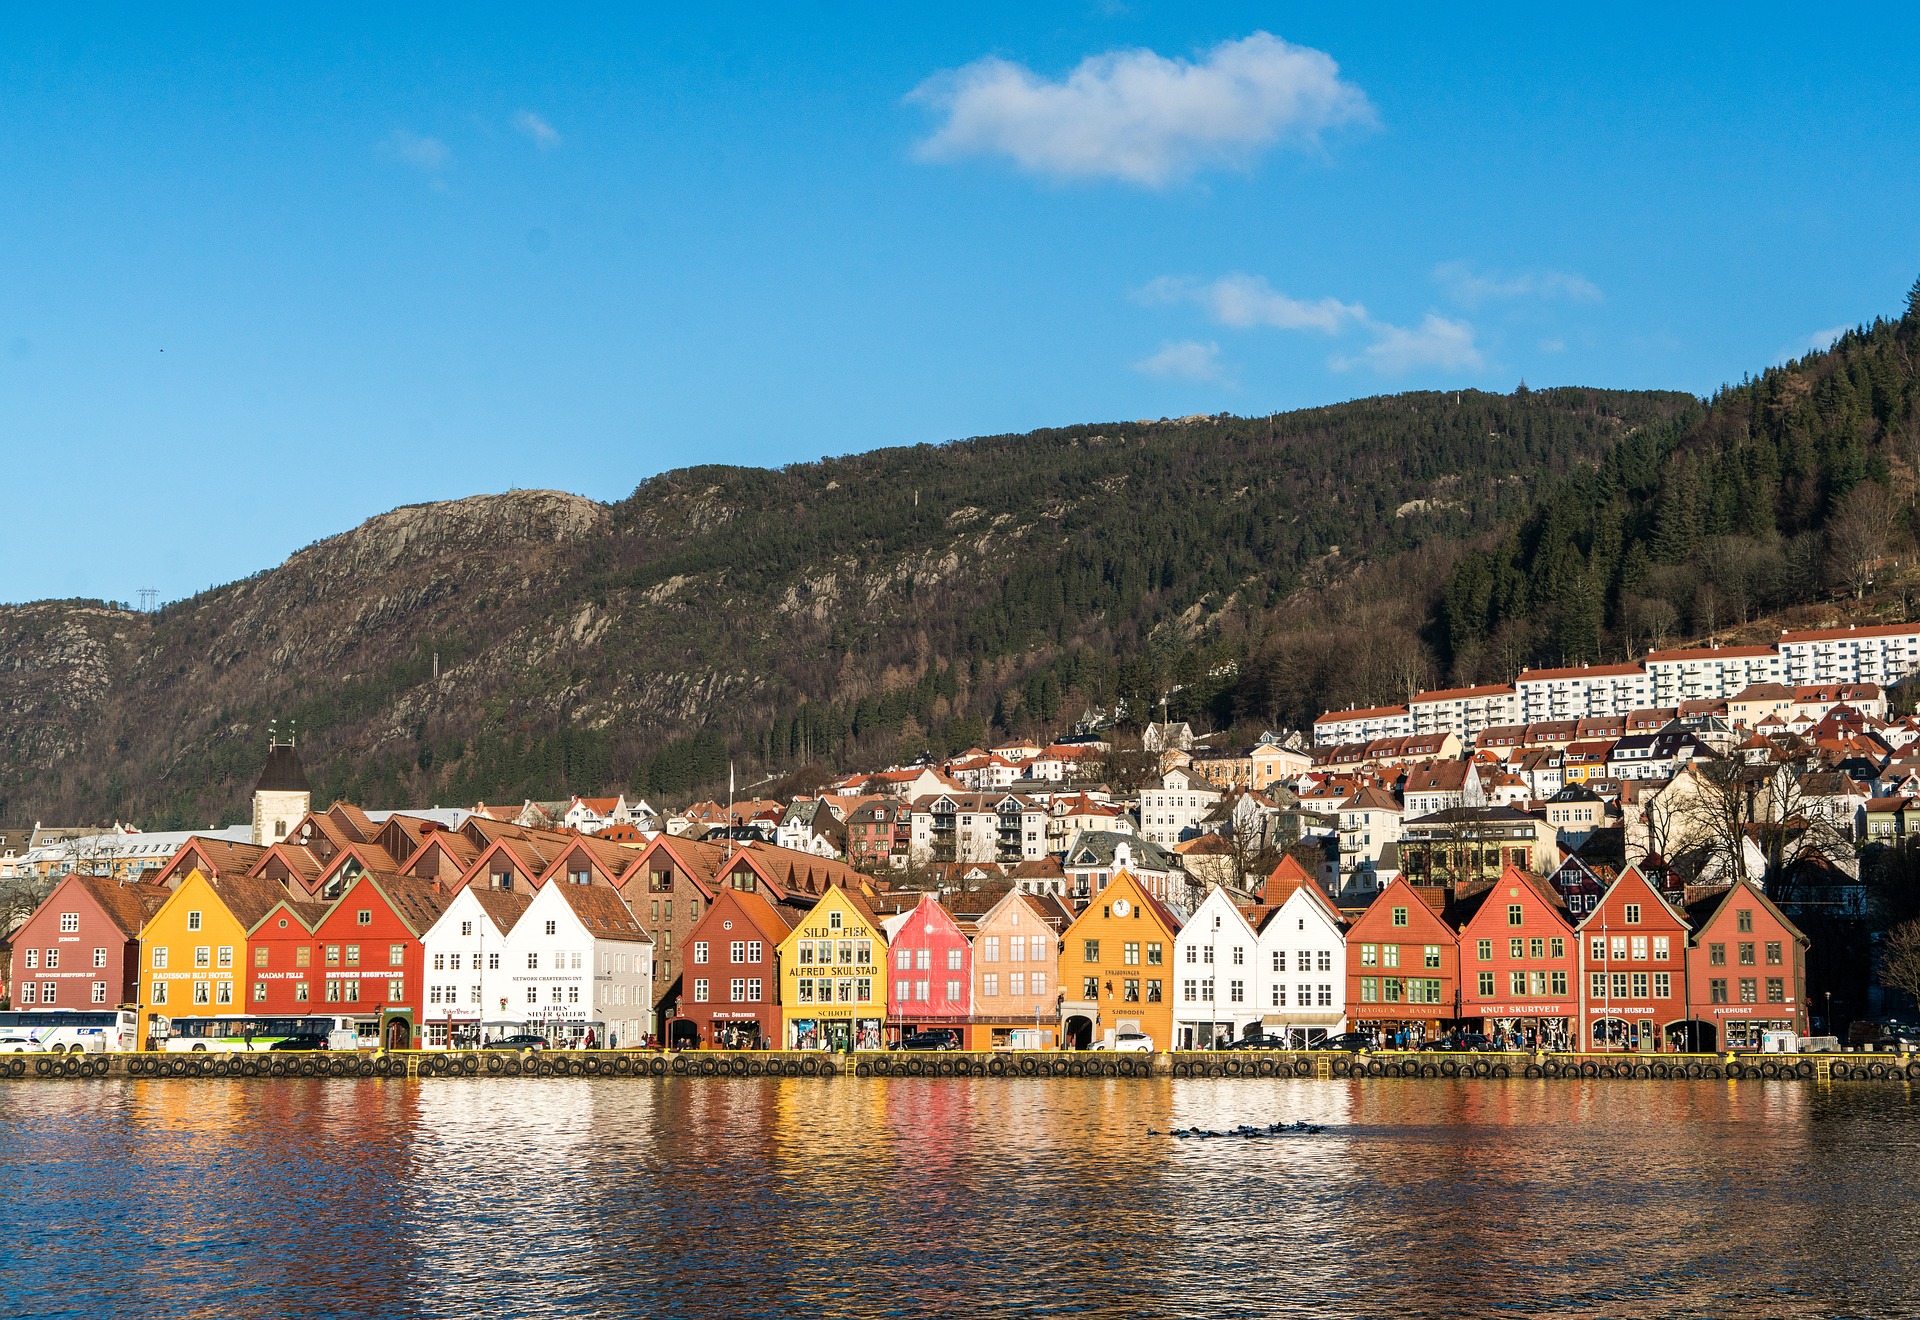 مقترح برنامج و مسار سياحي لزيارة النرويج